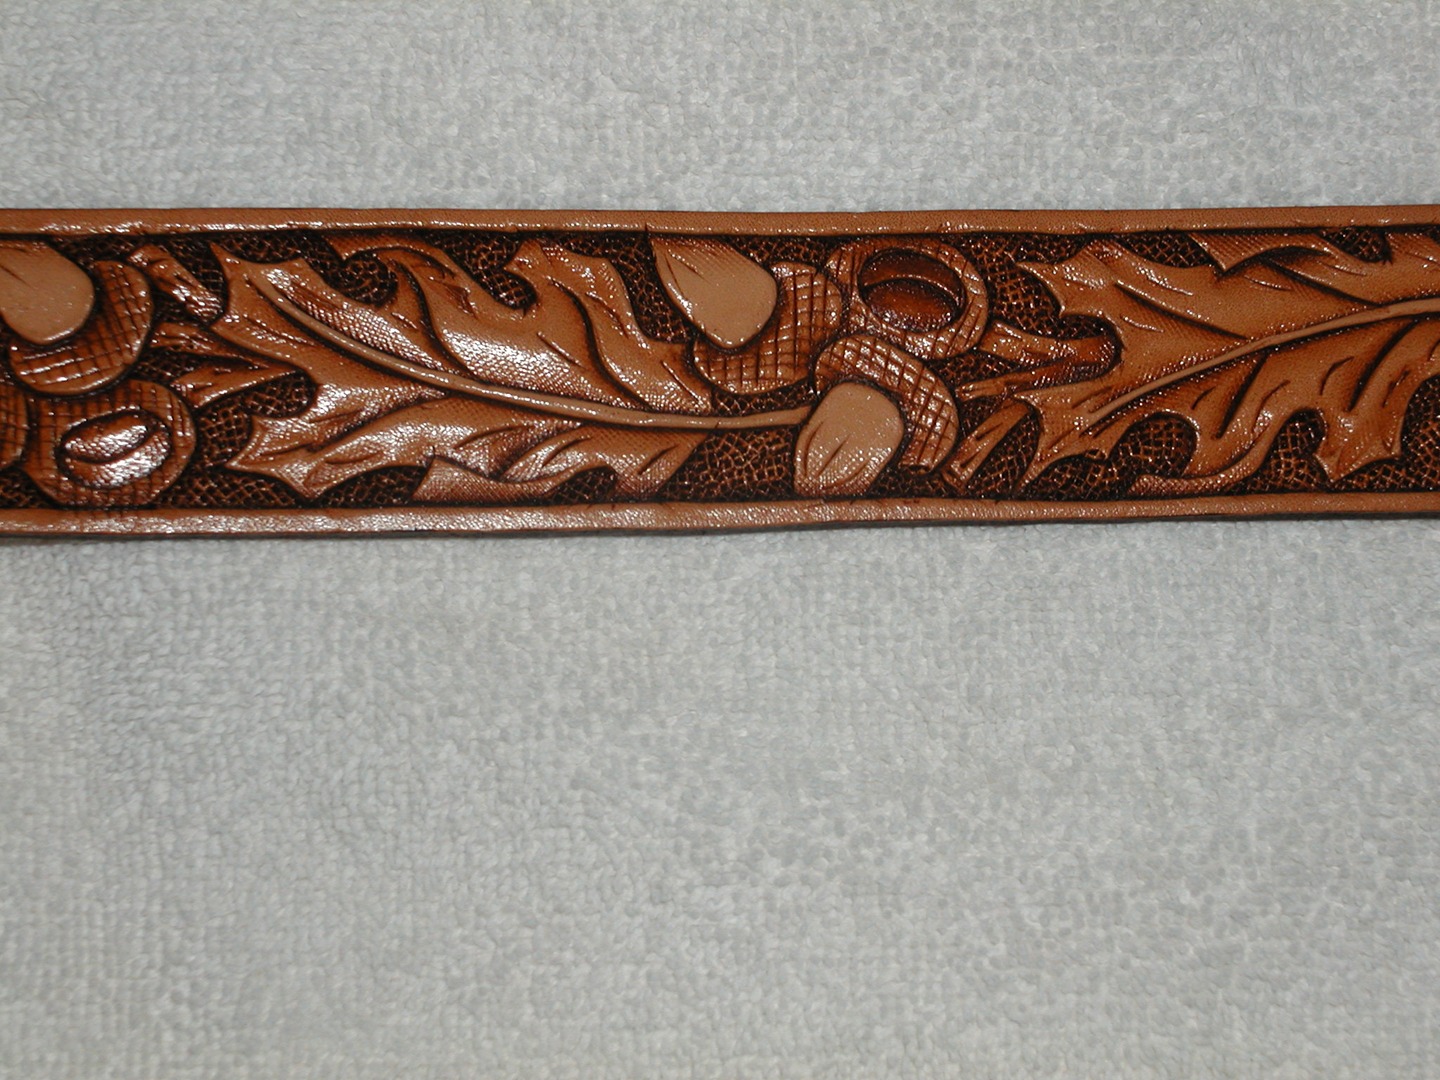 Close-up of oak leaf/acorn carving